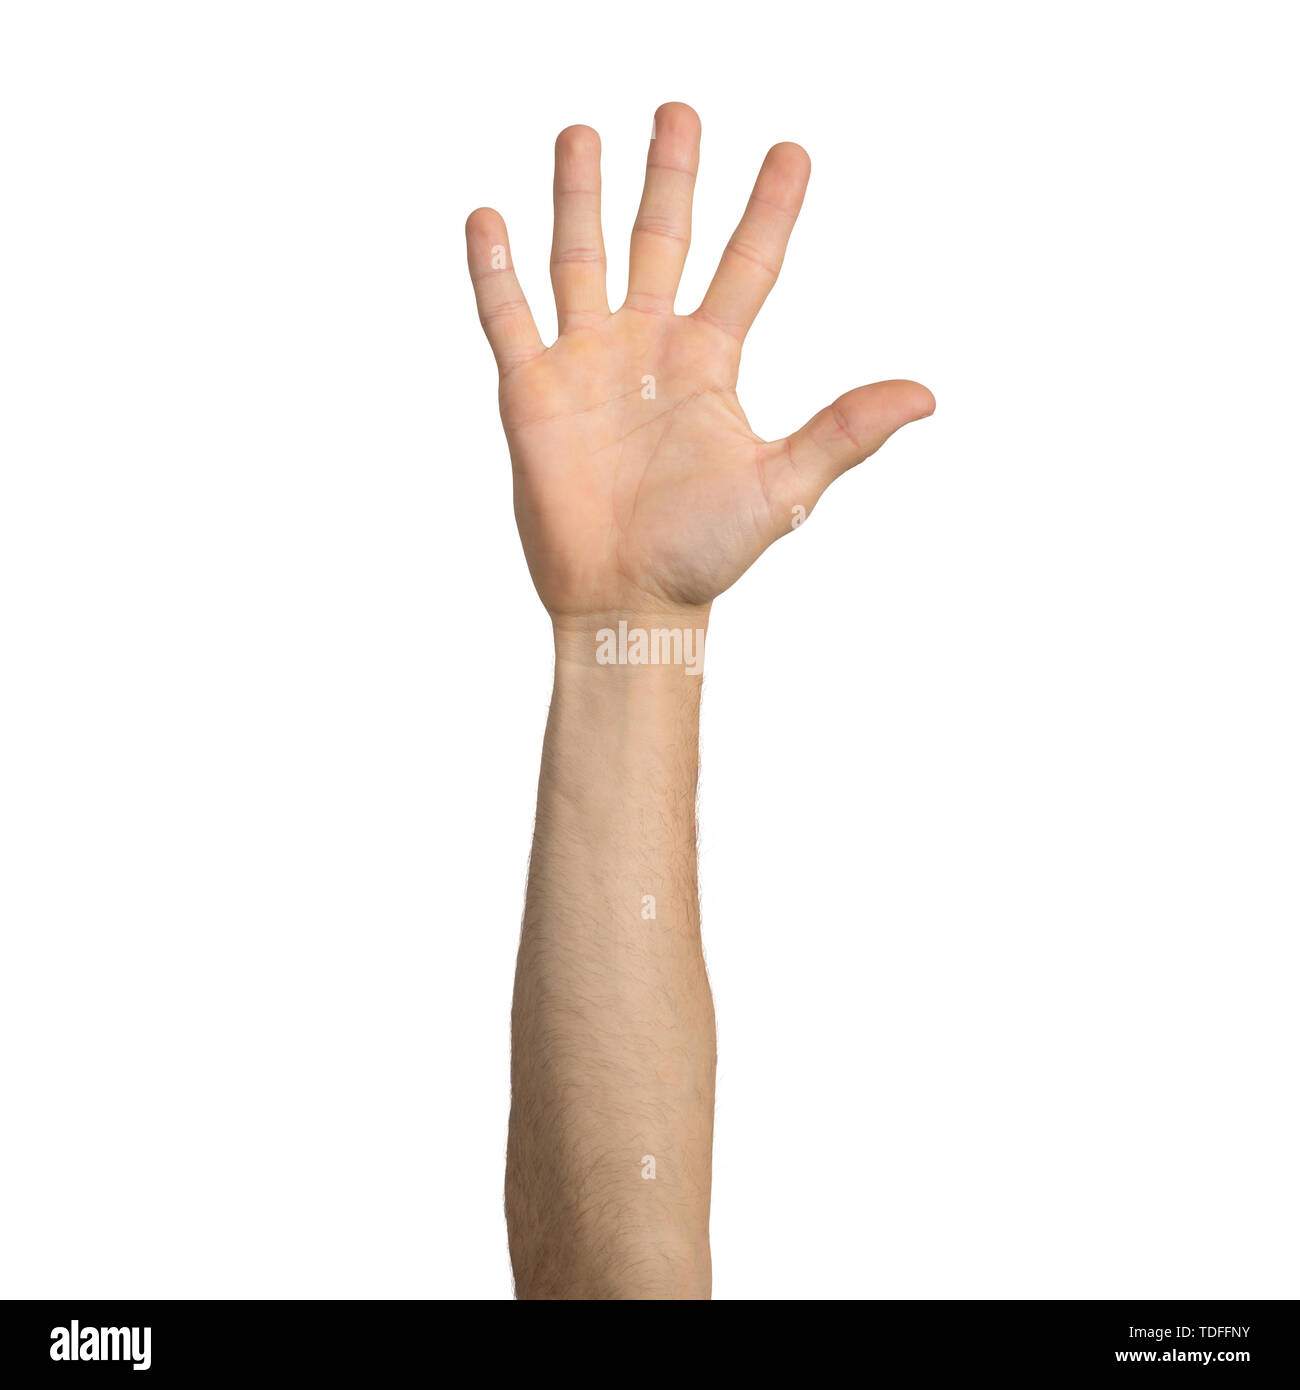 Erwachsene mann Hand zeigen, öffnen Sie Palm Geste. Teilnahme und Stimmabgabe unterzeichnen. Menschliche Hand gestikulierend Zeichen auf weißem Hintergrund. Männliche erhobenen Arm prese Stockfoto